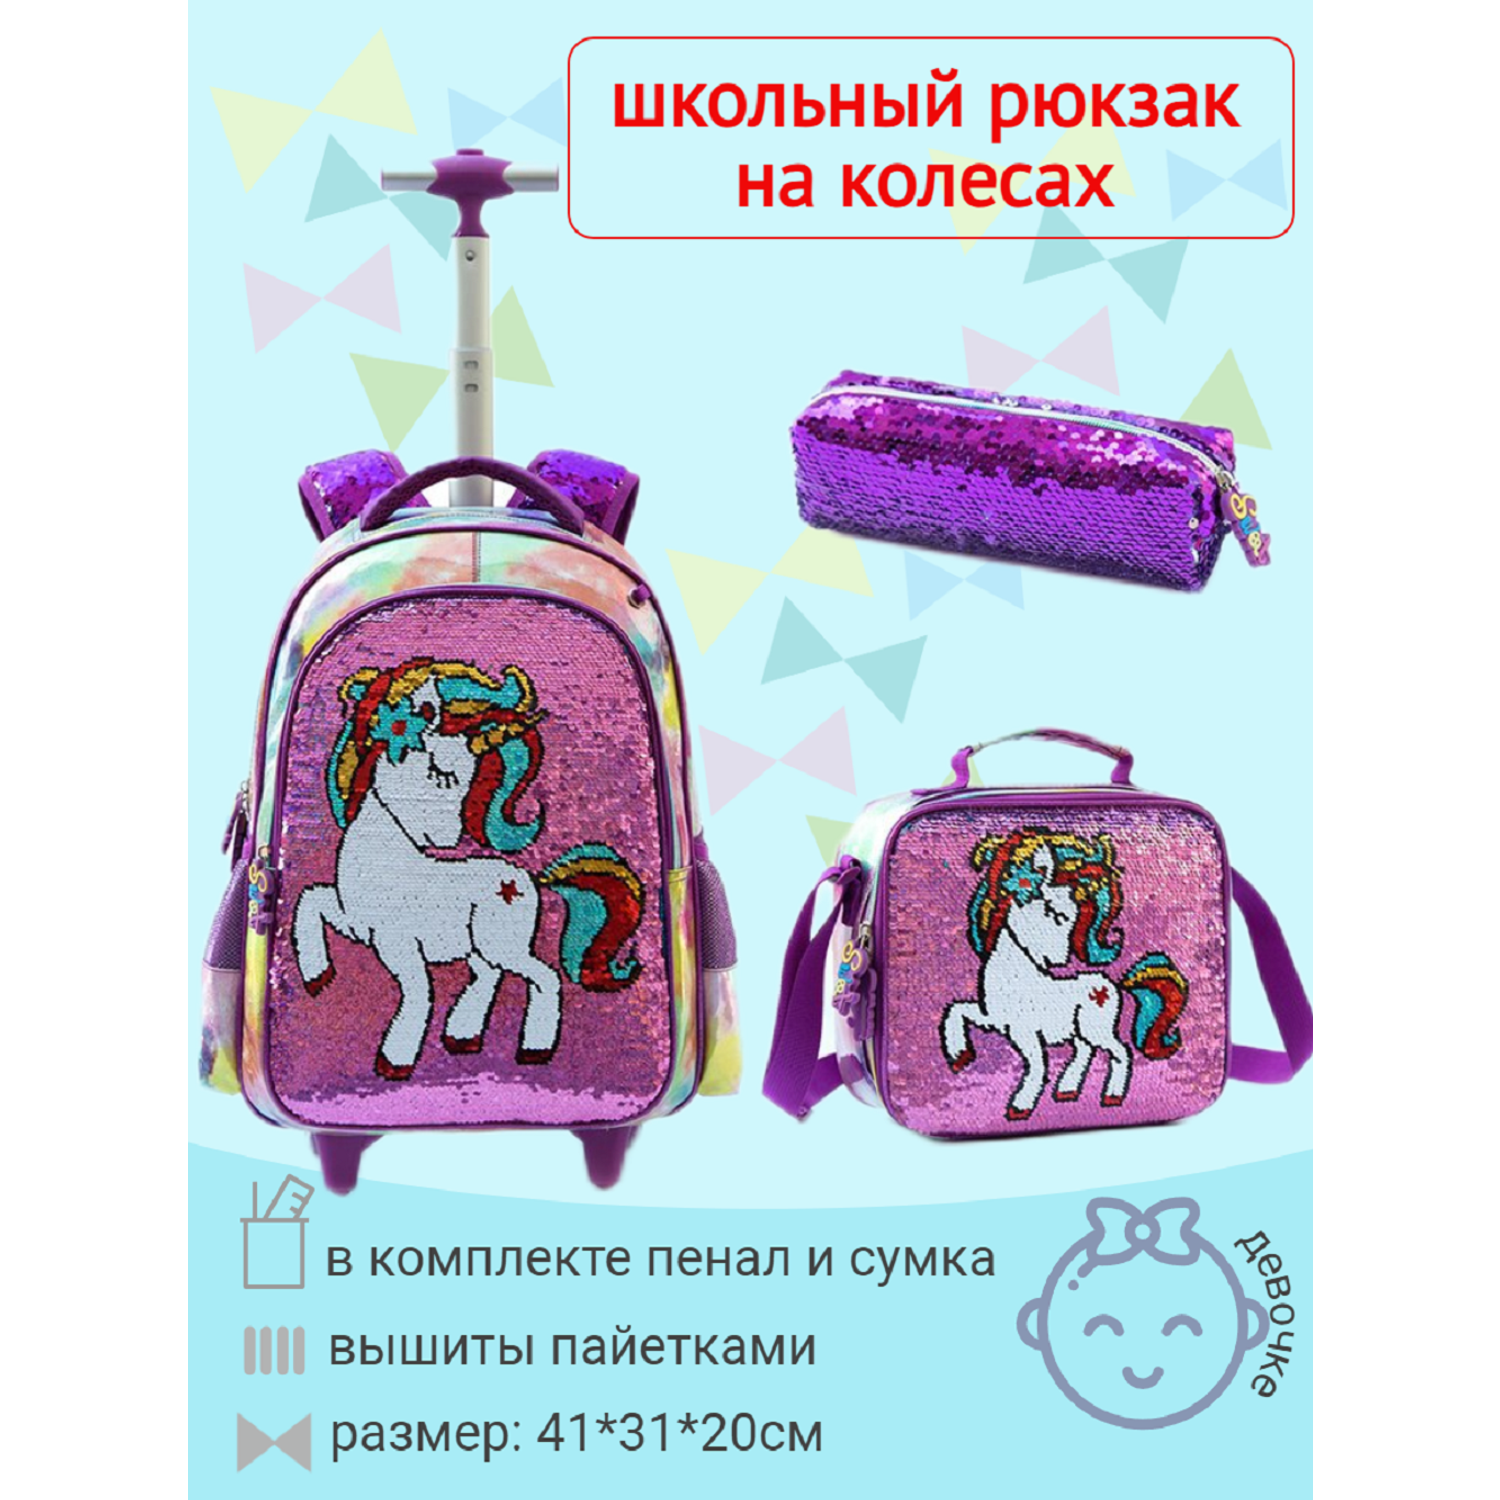 Рюкзак на колесах Jasminestar розовый Единорожка с наполнением сумка+пенал - фото 1